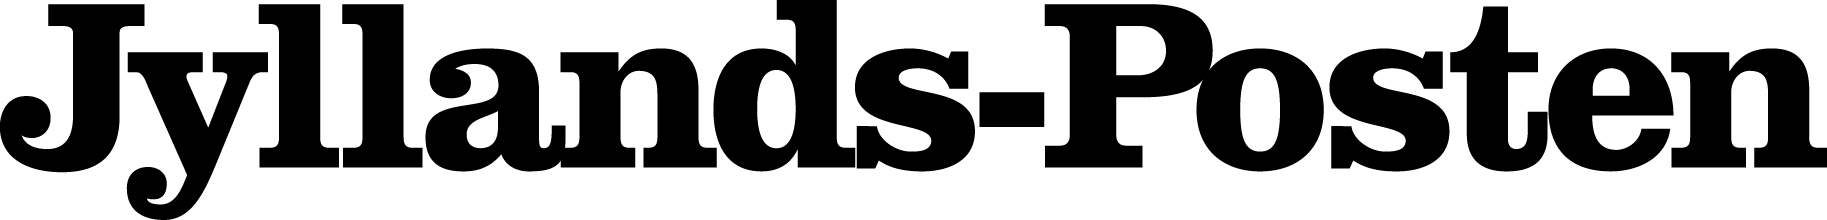 Jyllandsposten logo